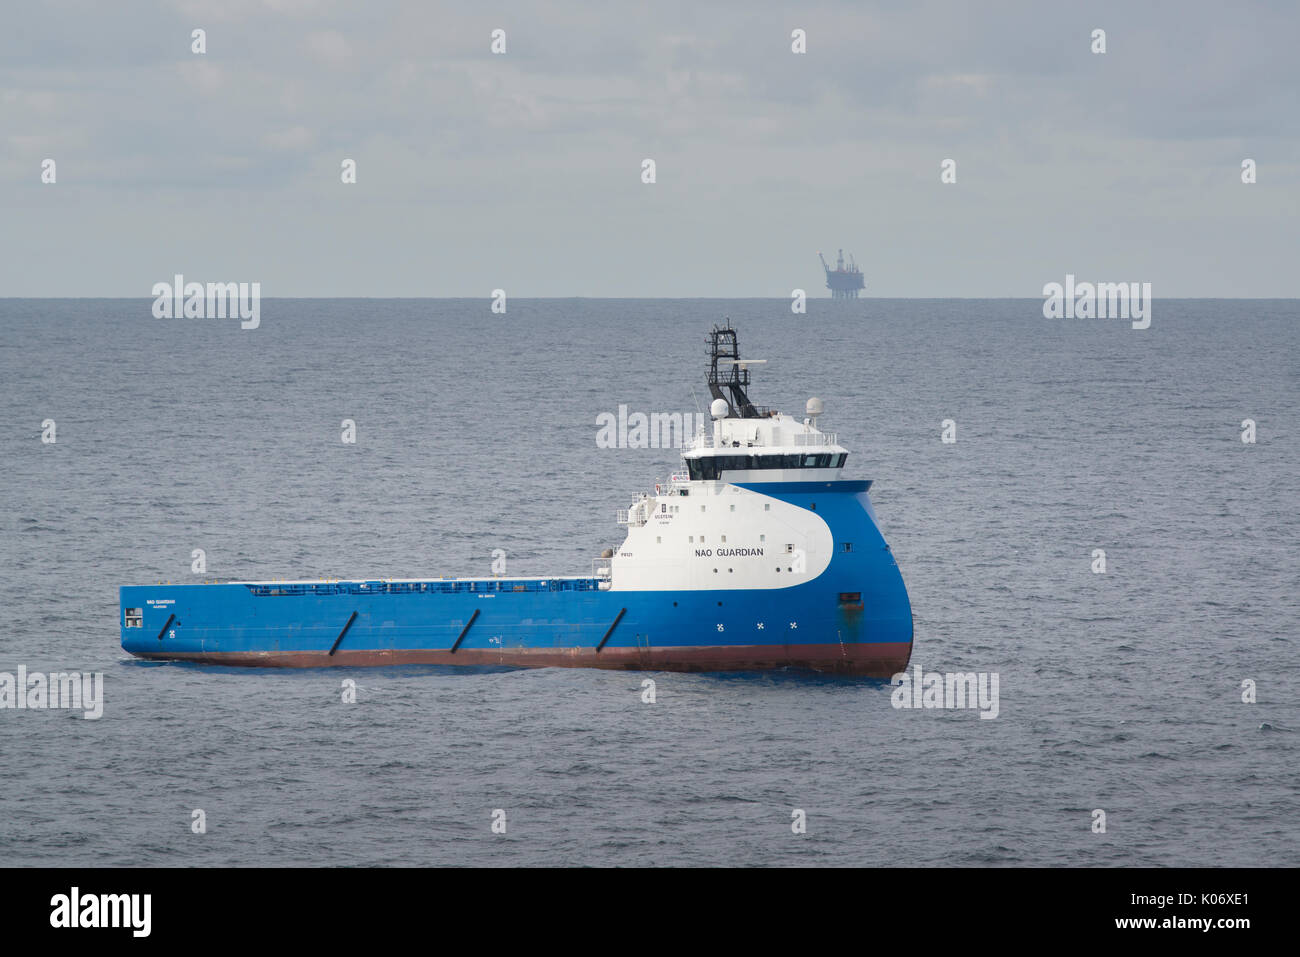 Das Versorgungsschiff nad Guardian, das in der Nordsee arbeitet und die Öl- und Gasindustrie beliefert. Quelle: LEE RAMSDEN / ALAMY Stockfoto